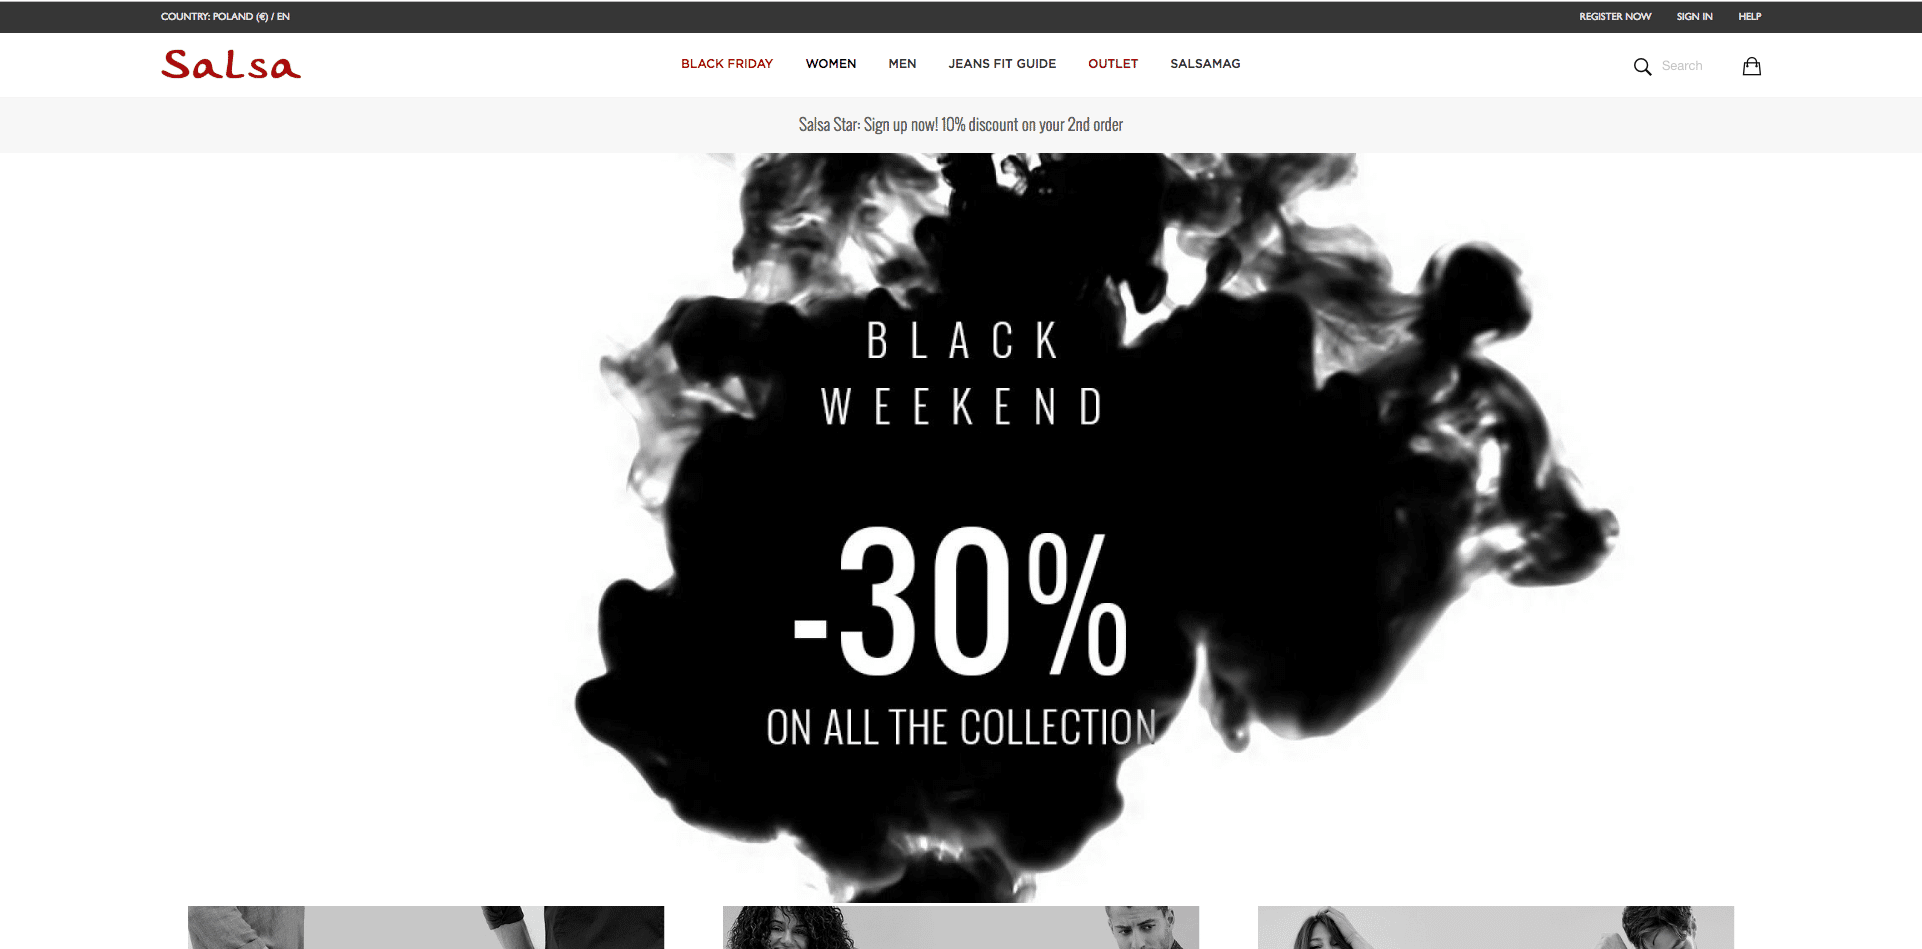 Salsa advertising Black Weekend